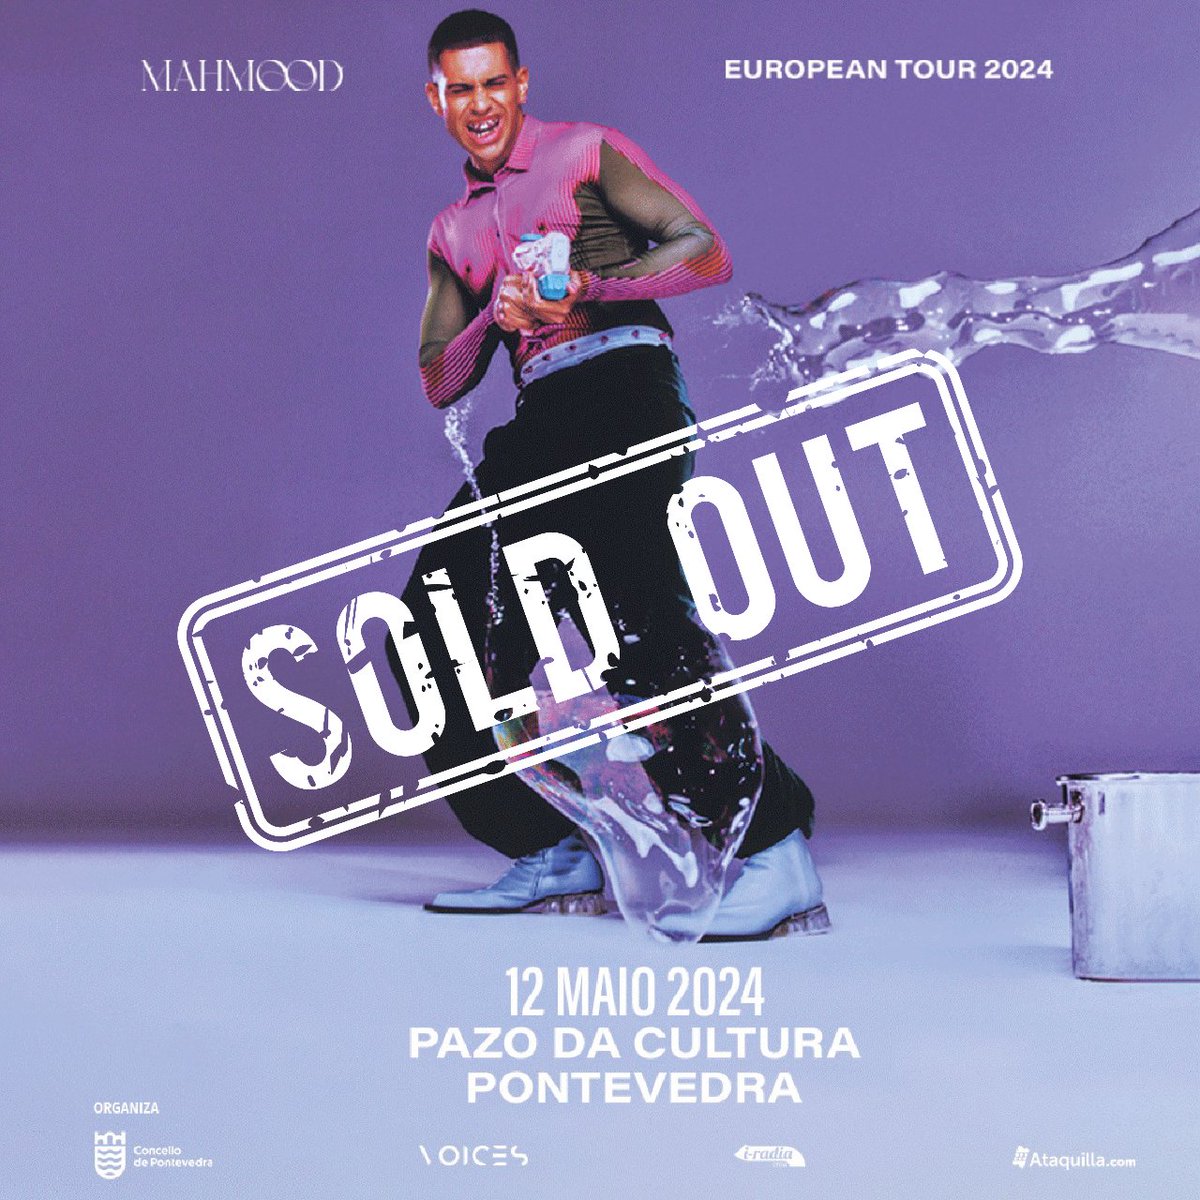 💥 ¡Mahmood cuelga el cartel de Sold Out! 💥

🙌 El artista italiano se subirá al escenario en #Pontevedra con todo el aforo vendido. ¡Y aún faltan más de dos meses para su concierto! 
.
#iradiacrea #concierto #musica #musicaendirecto #livemusic #Mahmood #conciertosgalicia